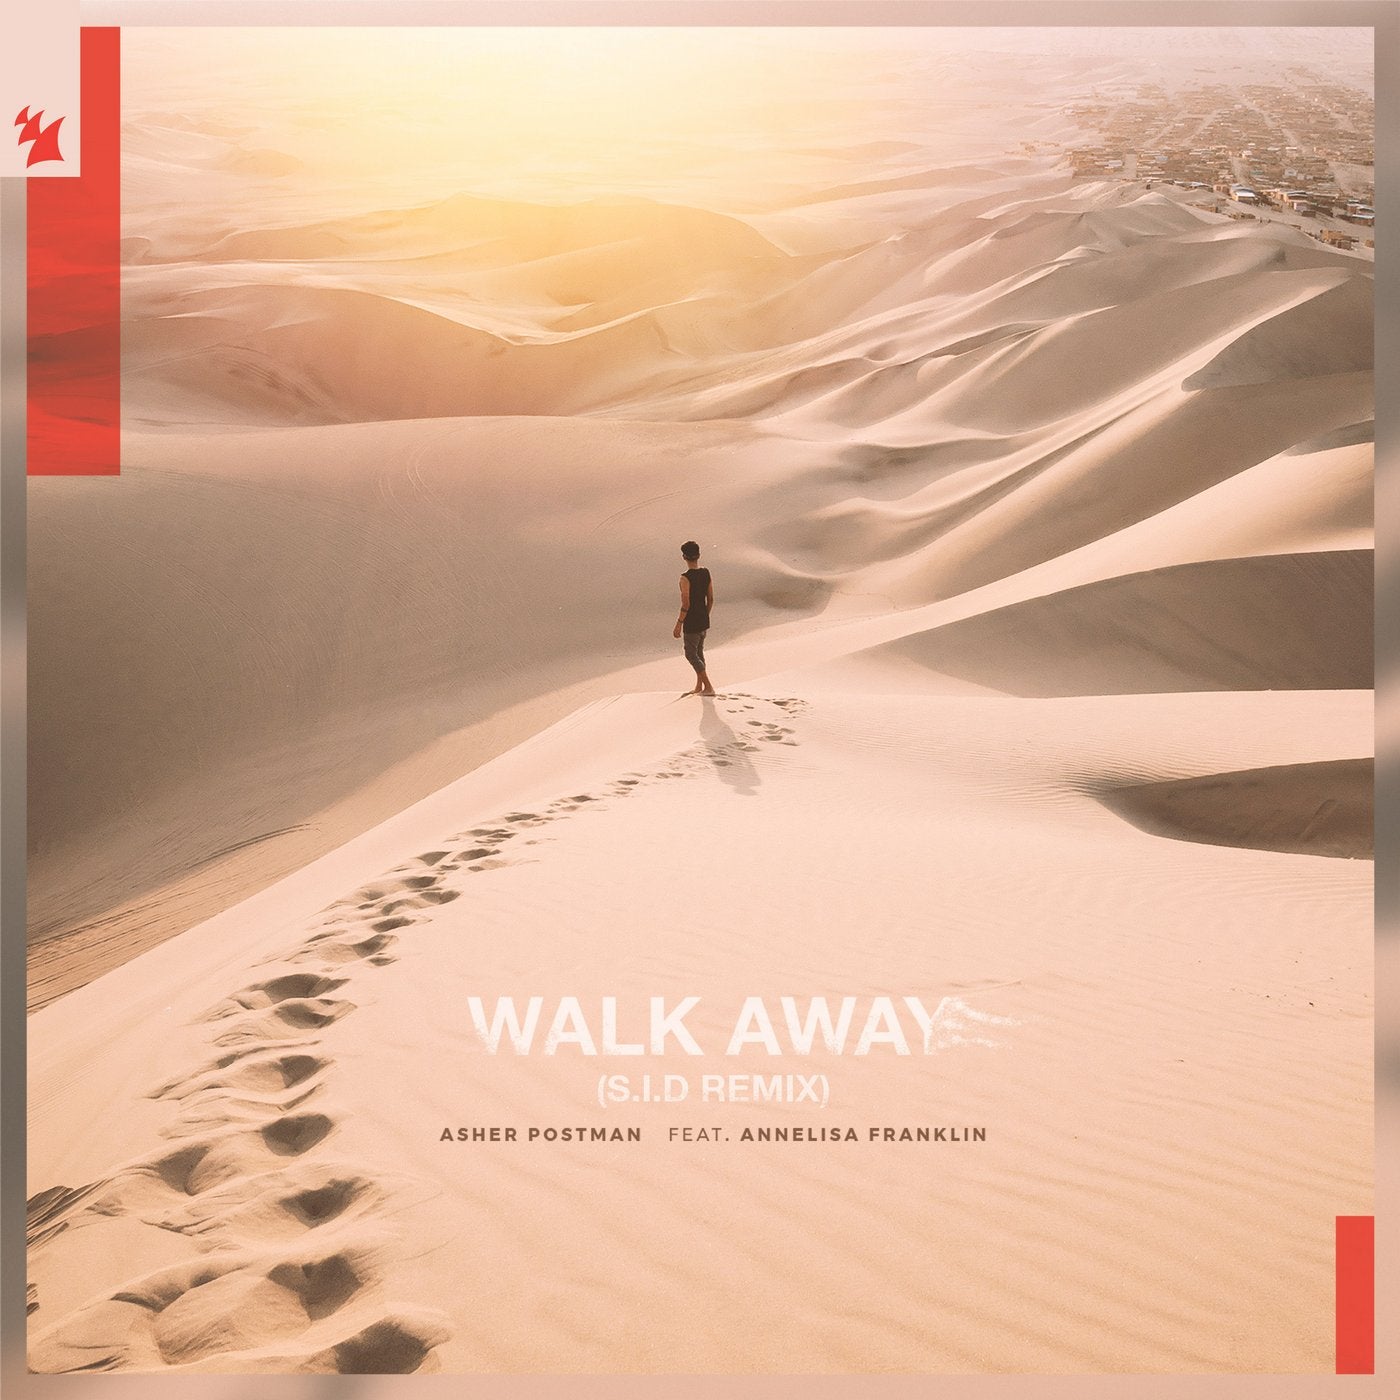 Walk Away - S.I.D Remix